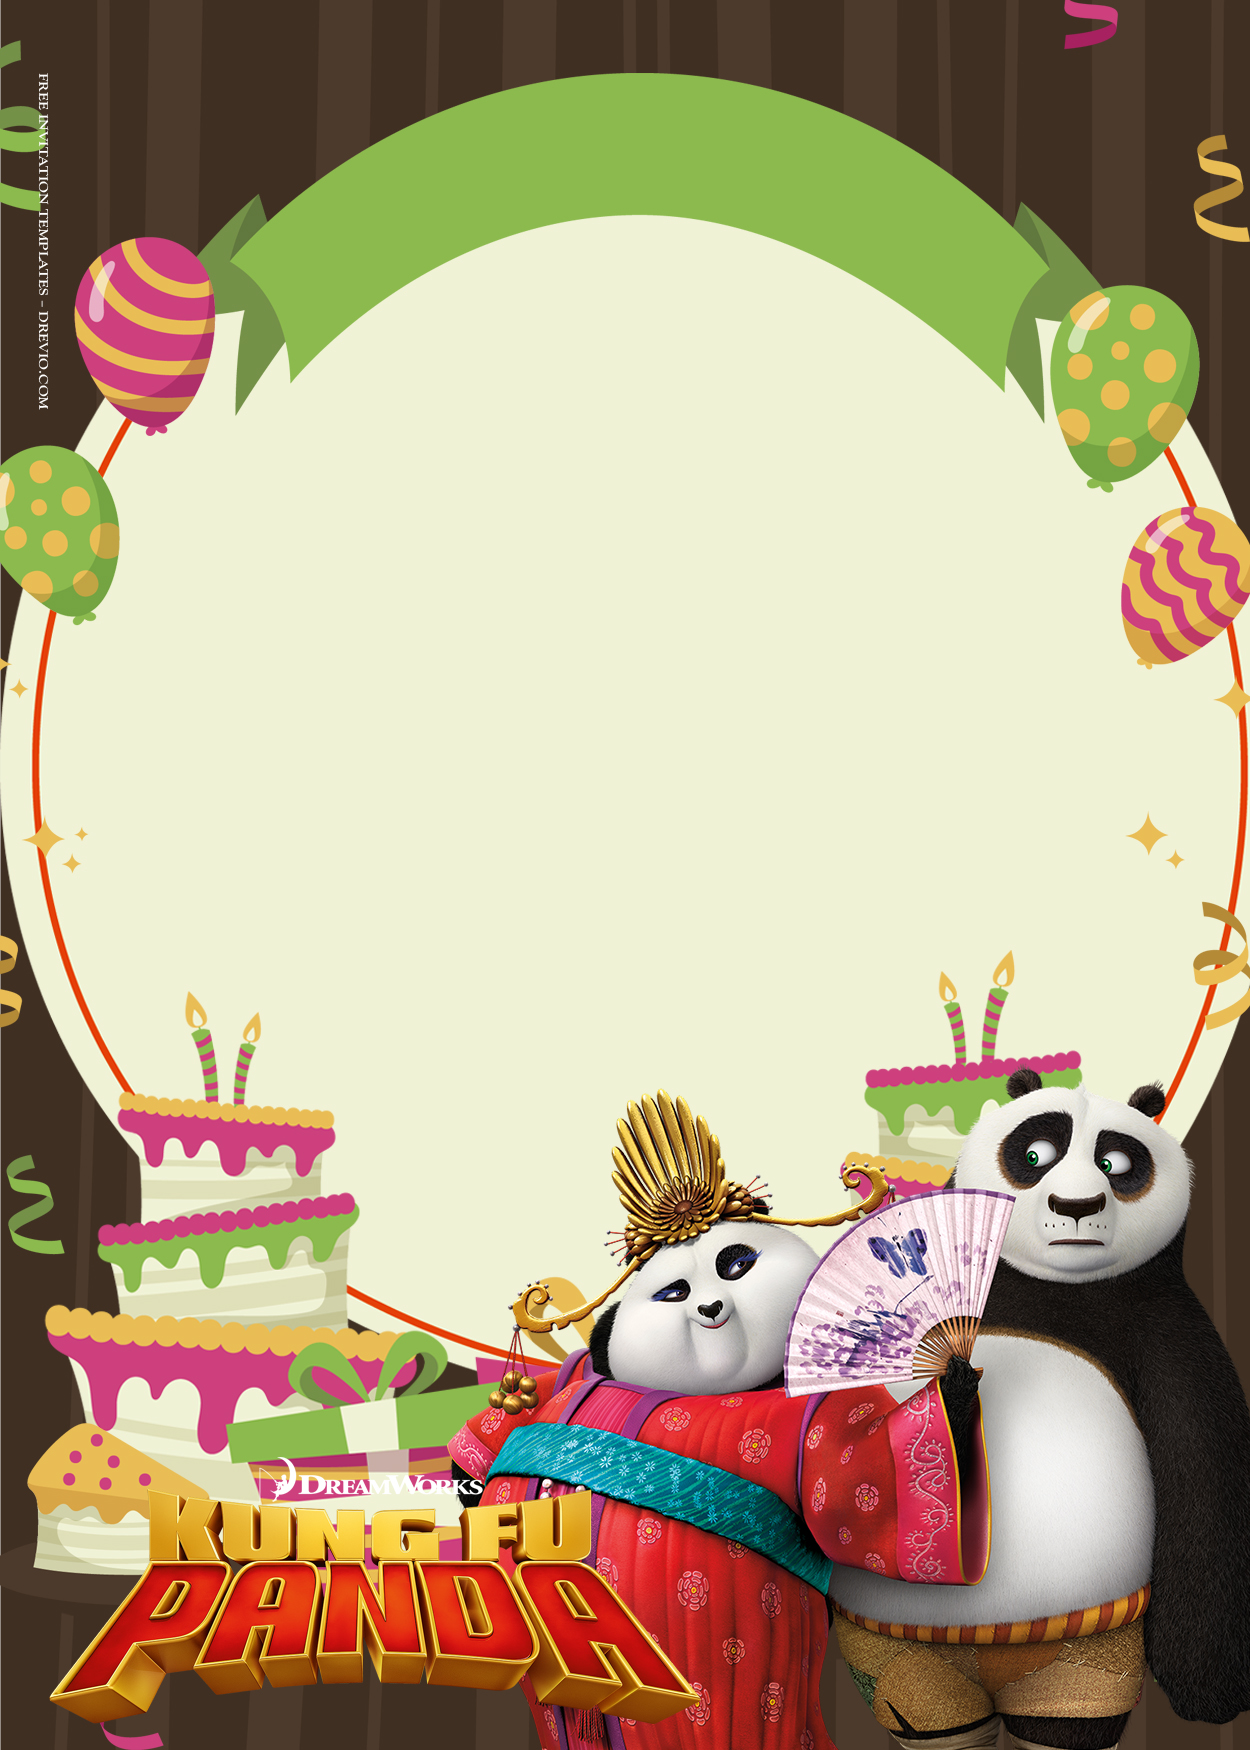 11+ Kungfu Panda The Breaking Dance Birthday Invitation Templates Nine